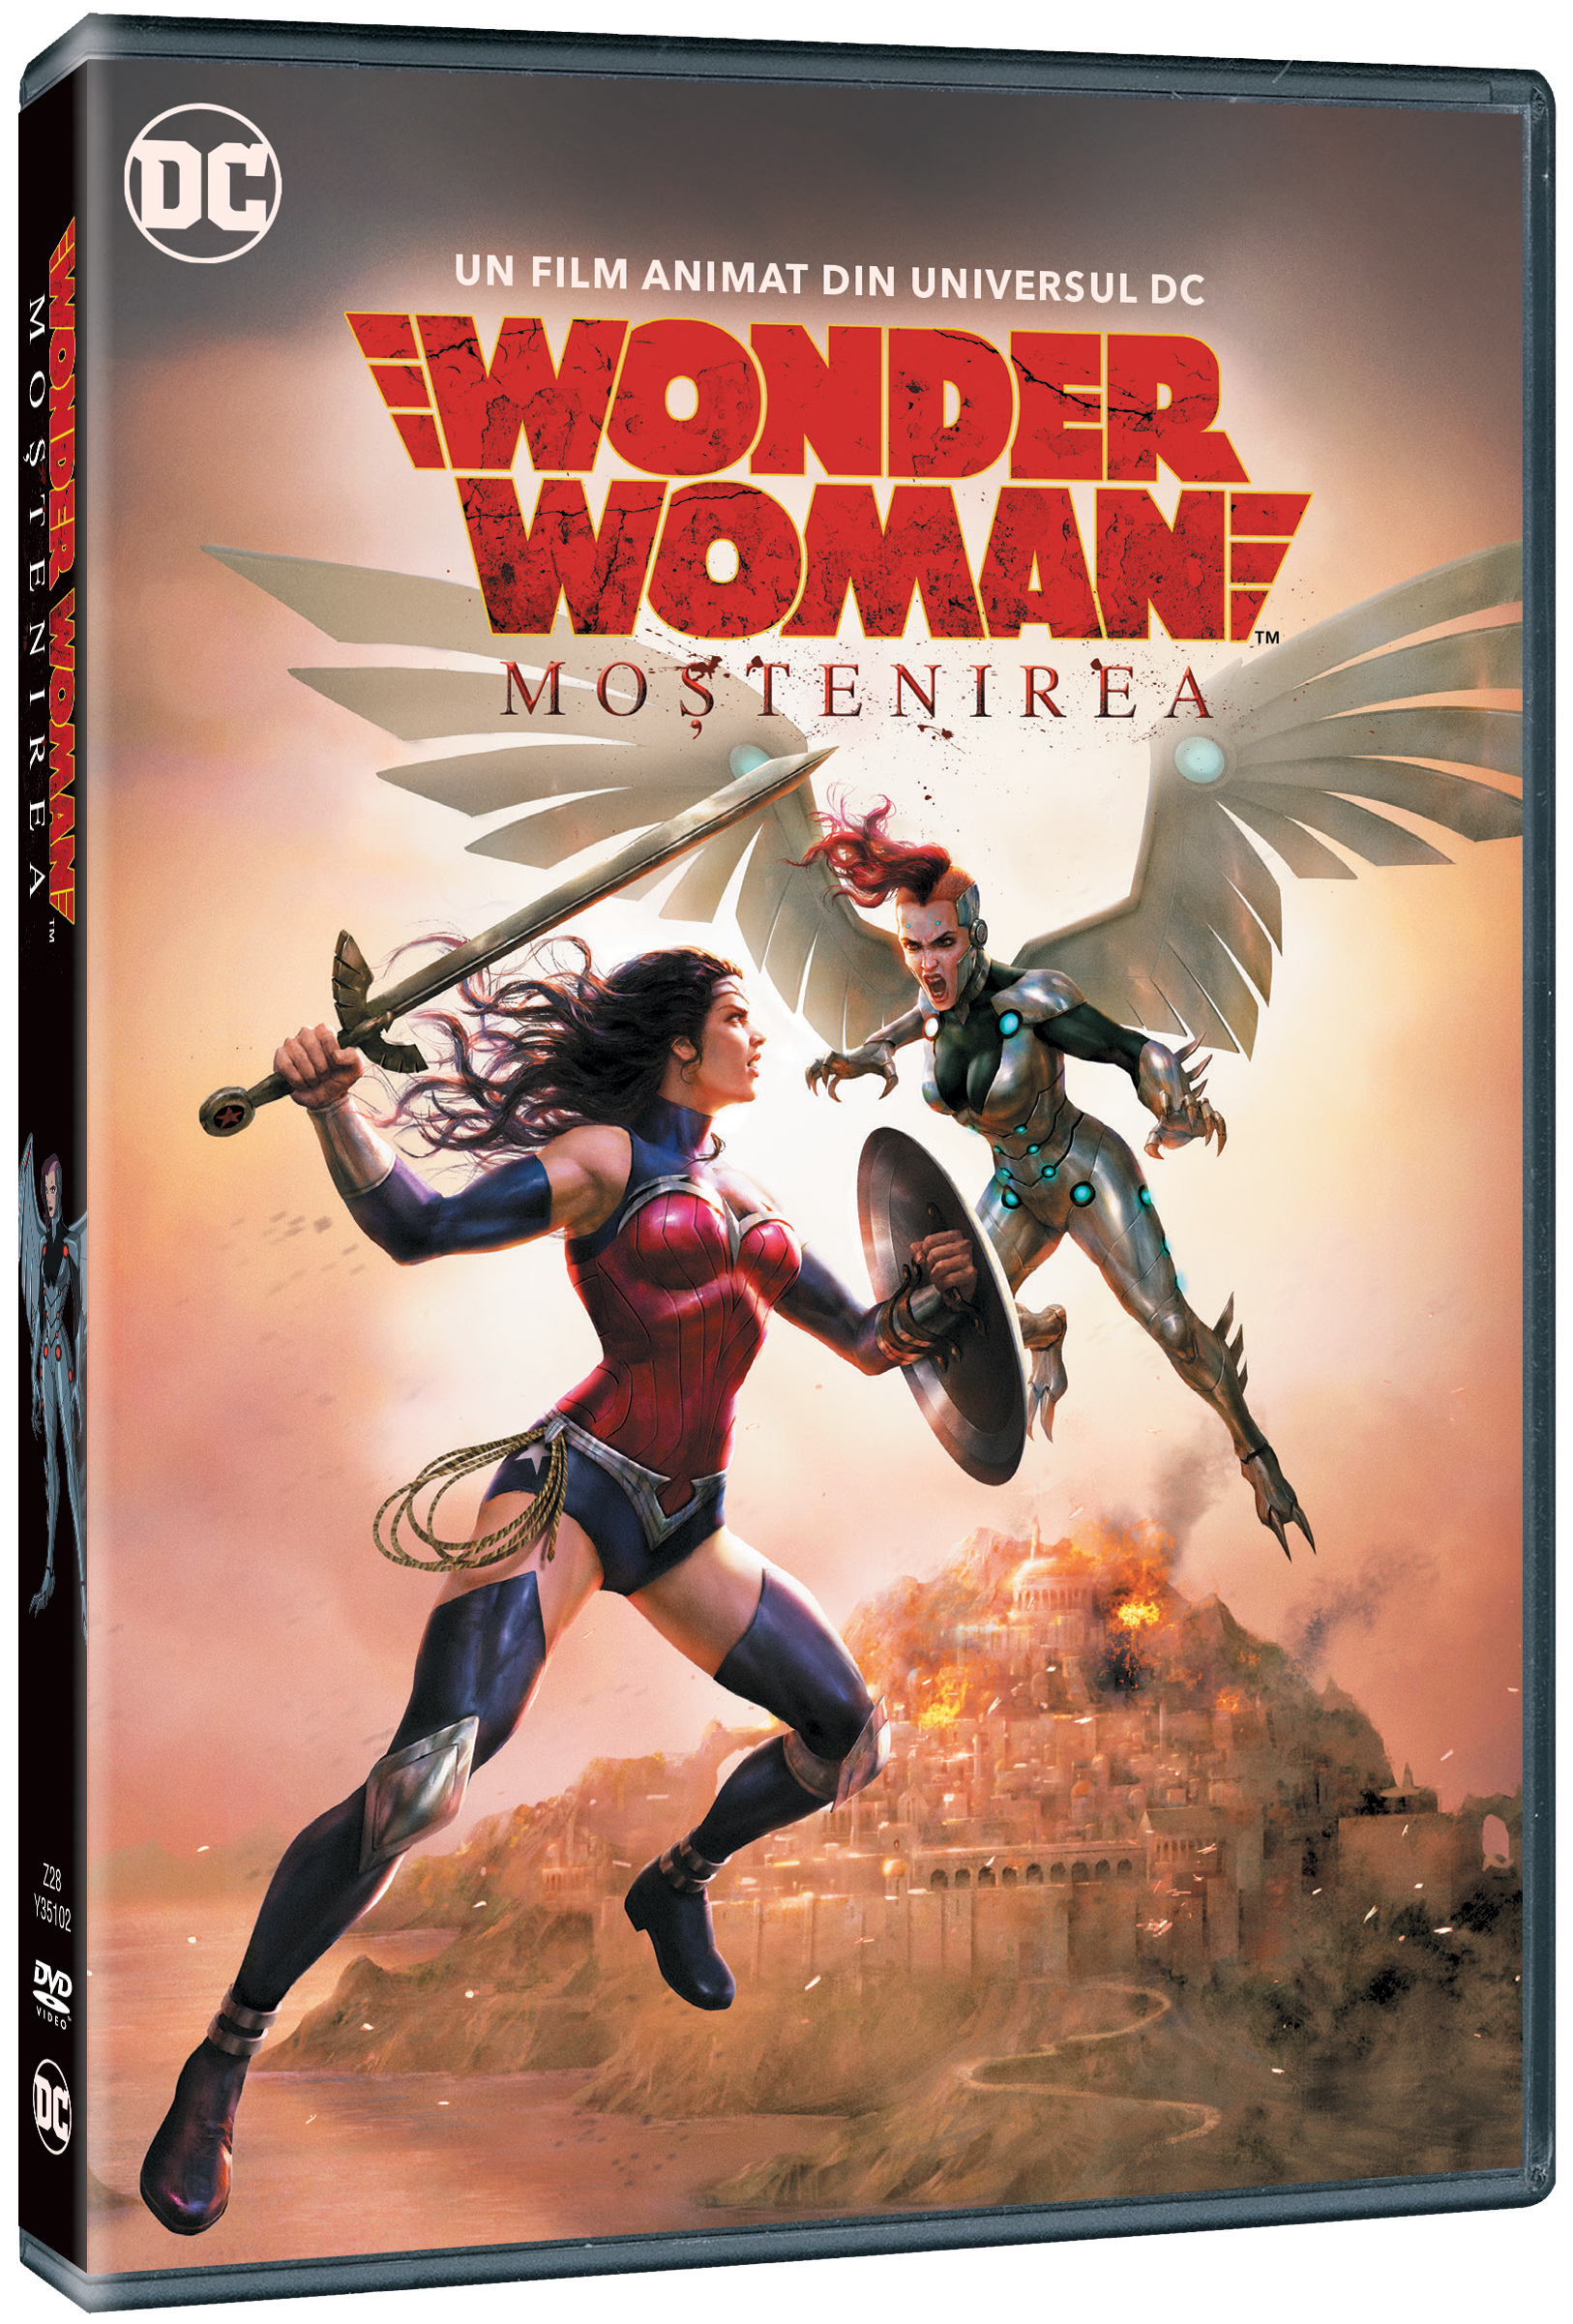 Wonder Woman: Mostenirea / Wonder Woman: Bloodlines